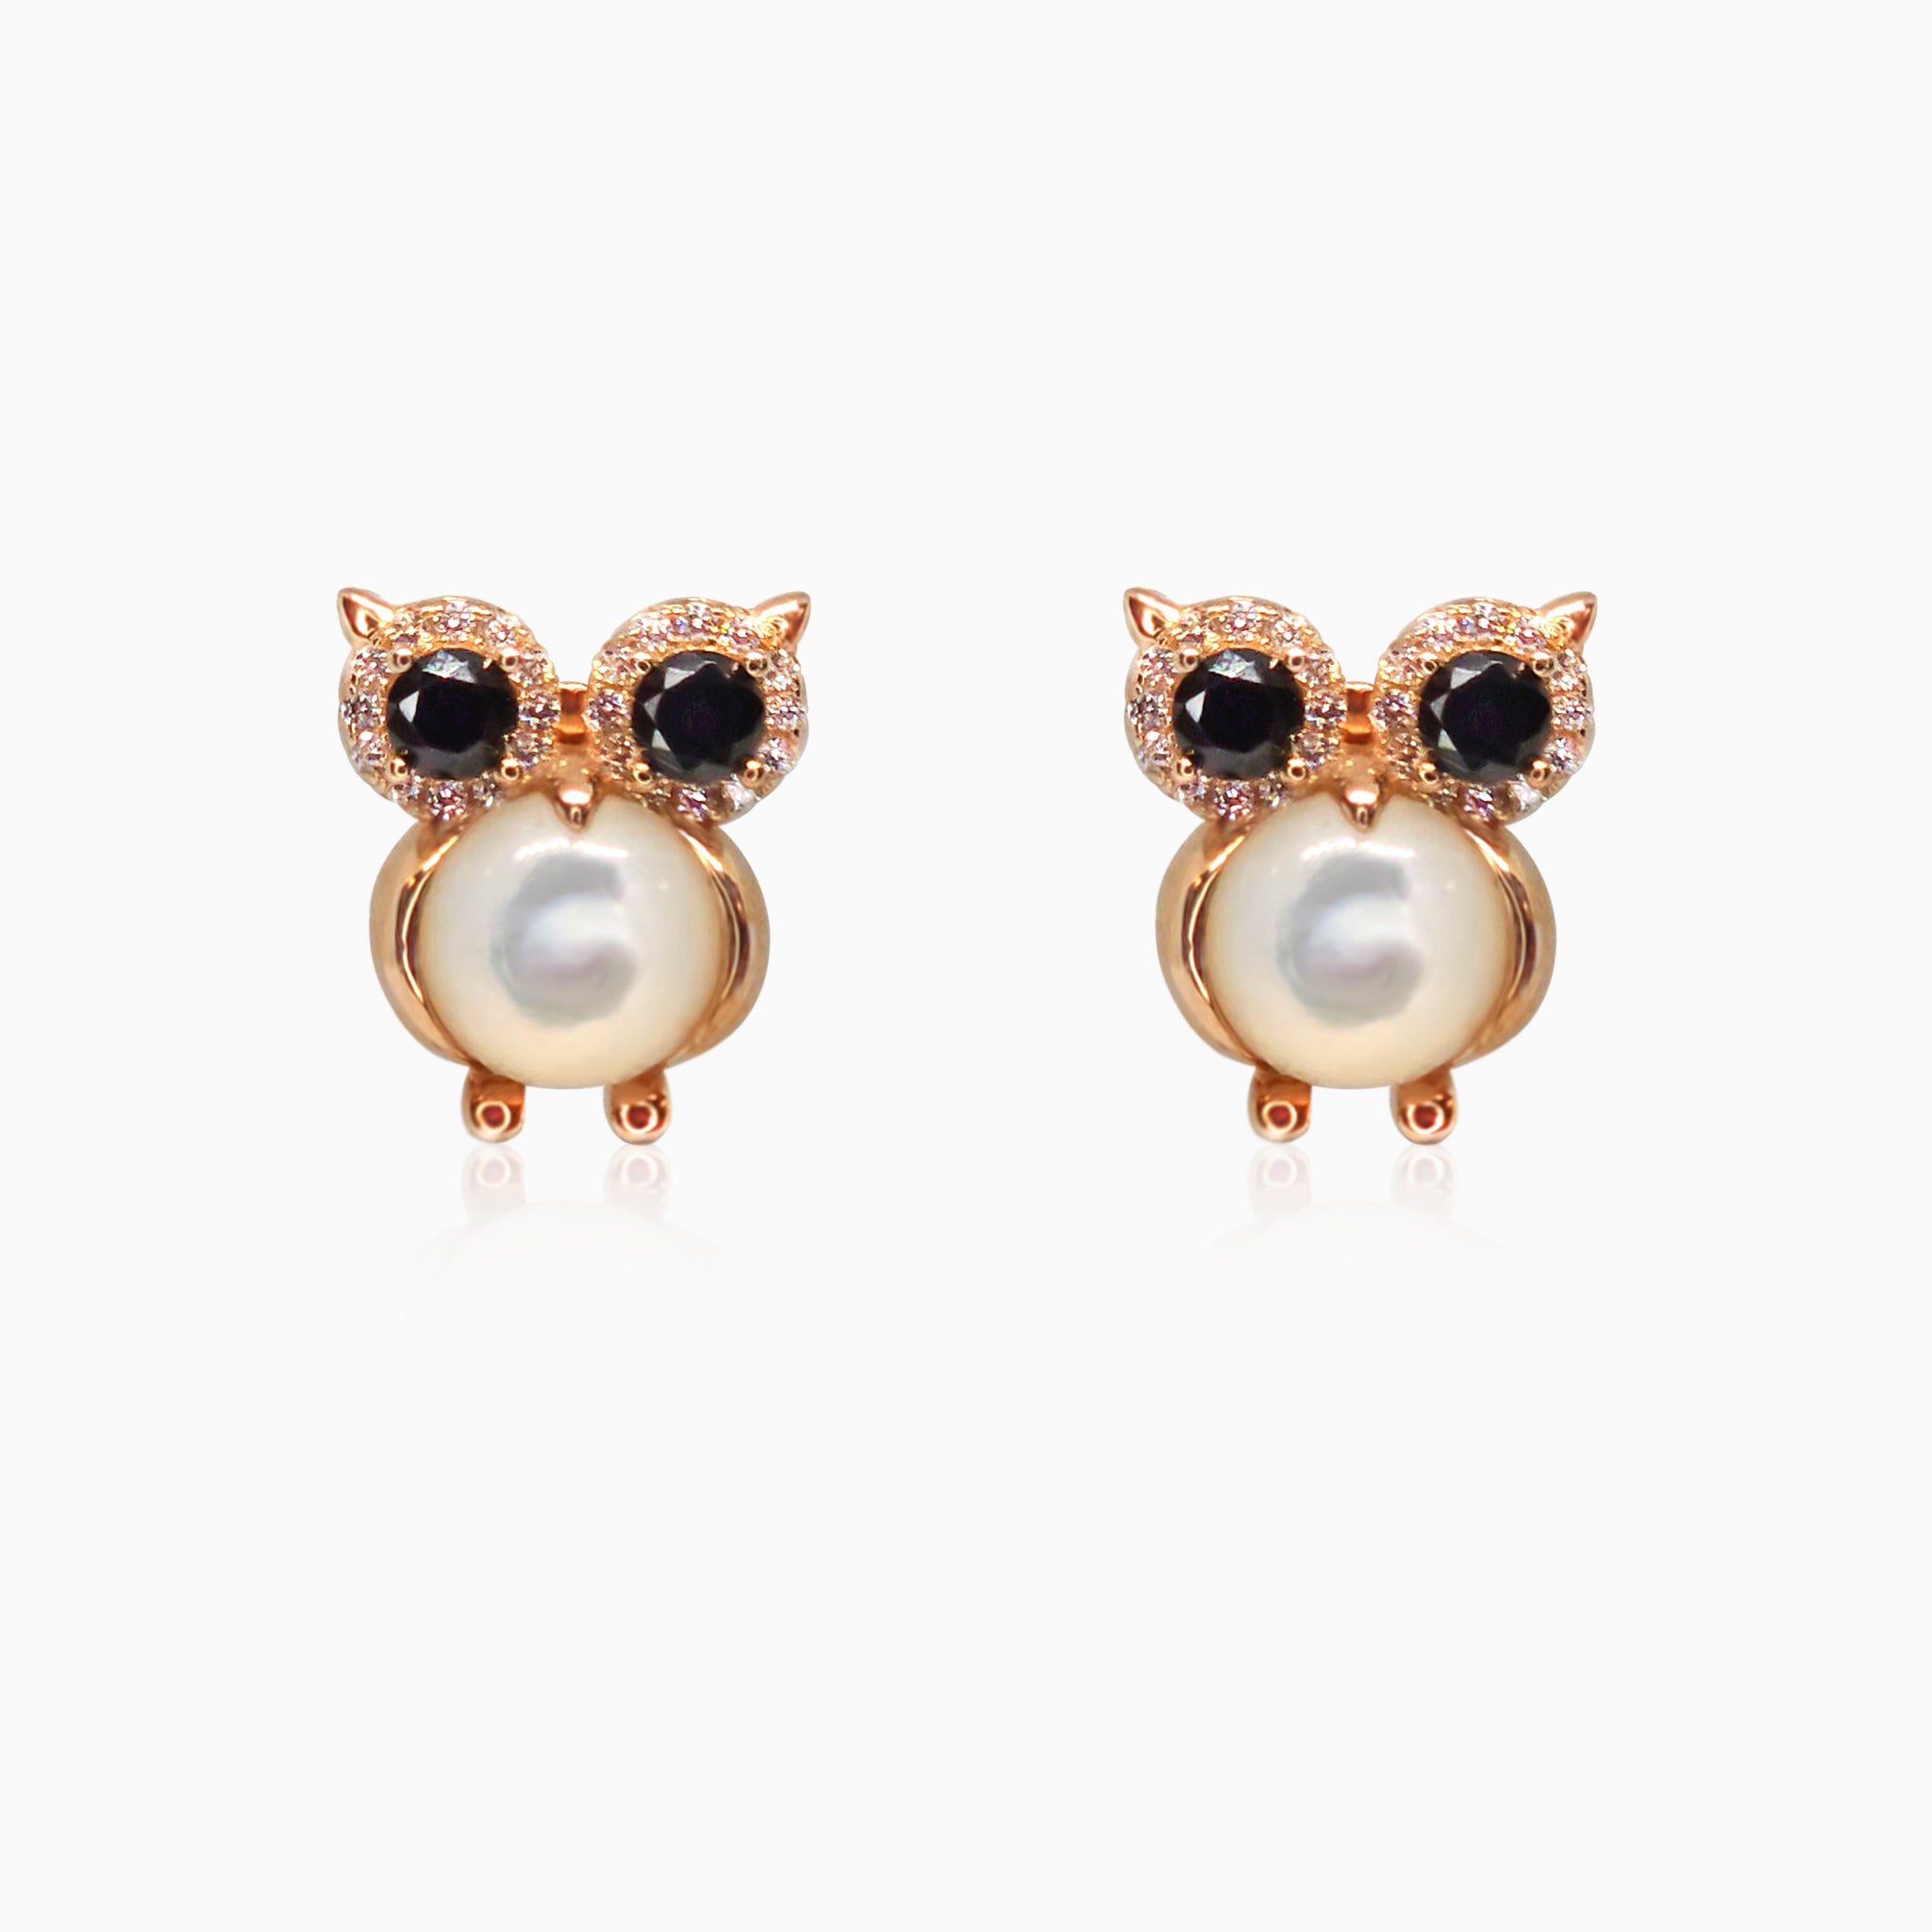 Silver Rose Gold Moonstone Owl Earrings